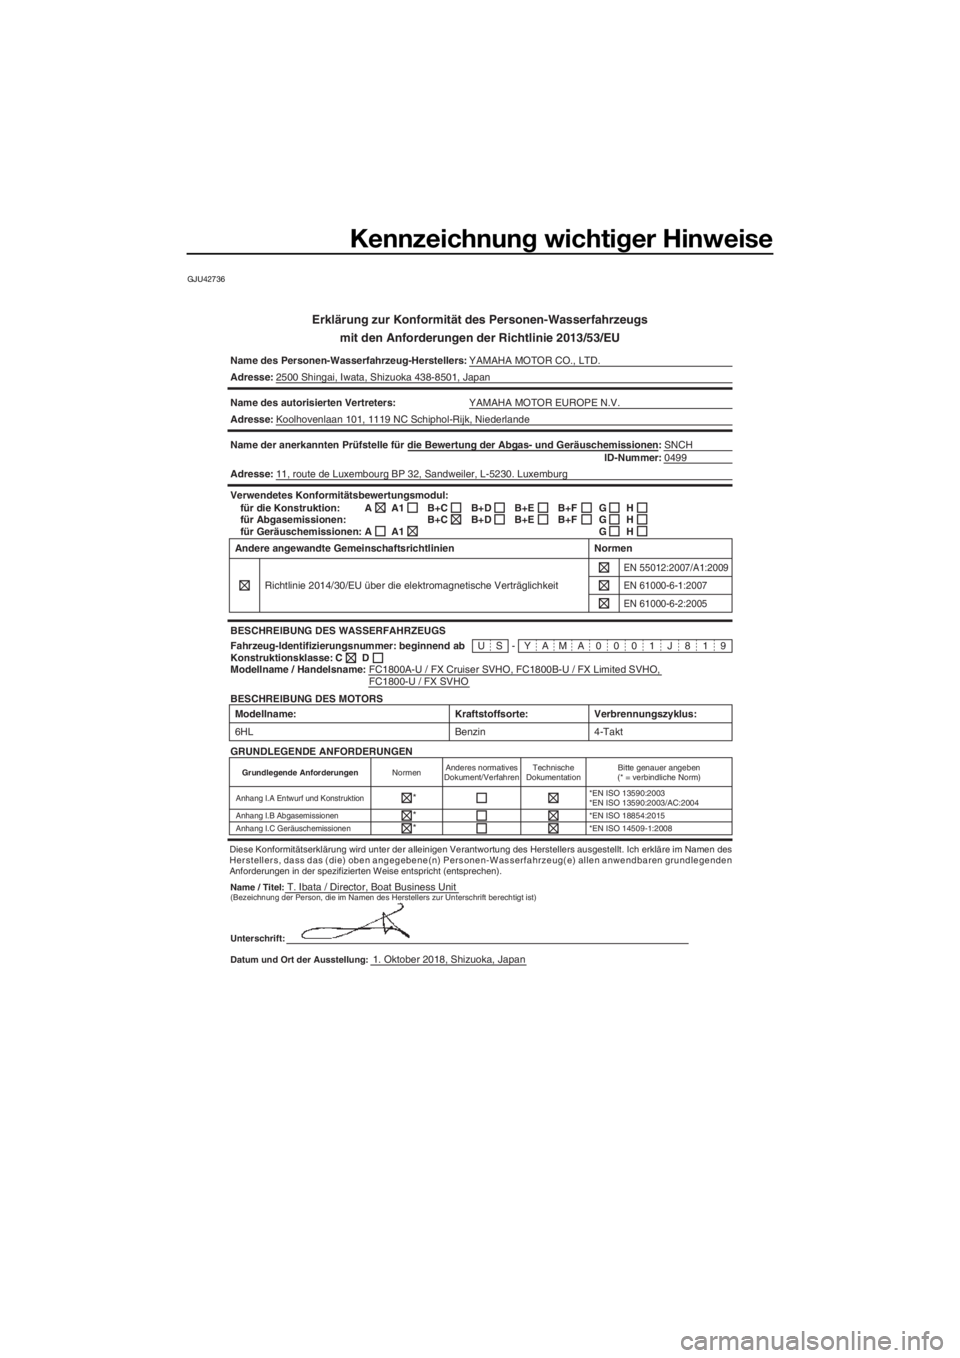 YAMAHA FX SVHO 2019  Betriebsanleitungen (in German) Kennzeichnung wichtiger Hinweise
GJU42736
Erklärung zur Konformität des Personen-Wasserfahrzeugs
mit den Anforderungen der Richtlinie 2013/53/EU
Name des Personen-Wasserfahrzeug-Herstellers:YAMAHA M